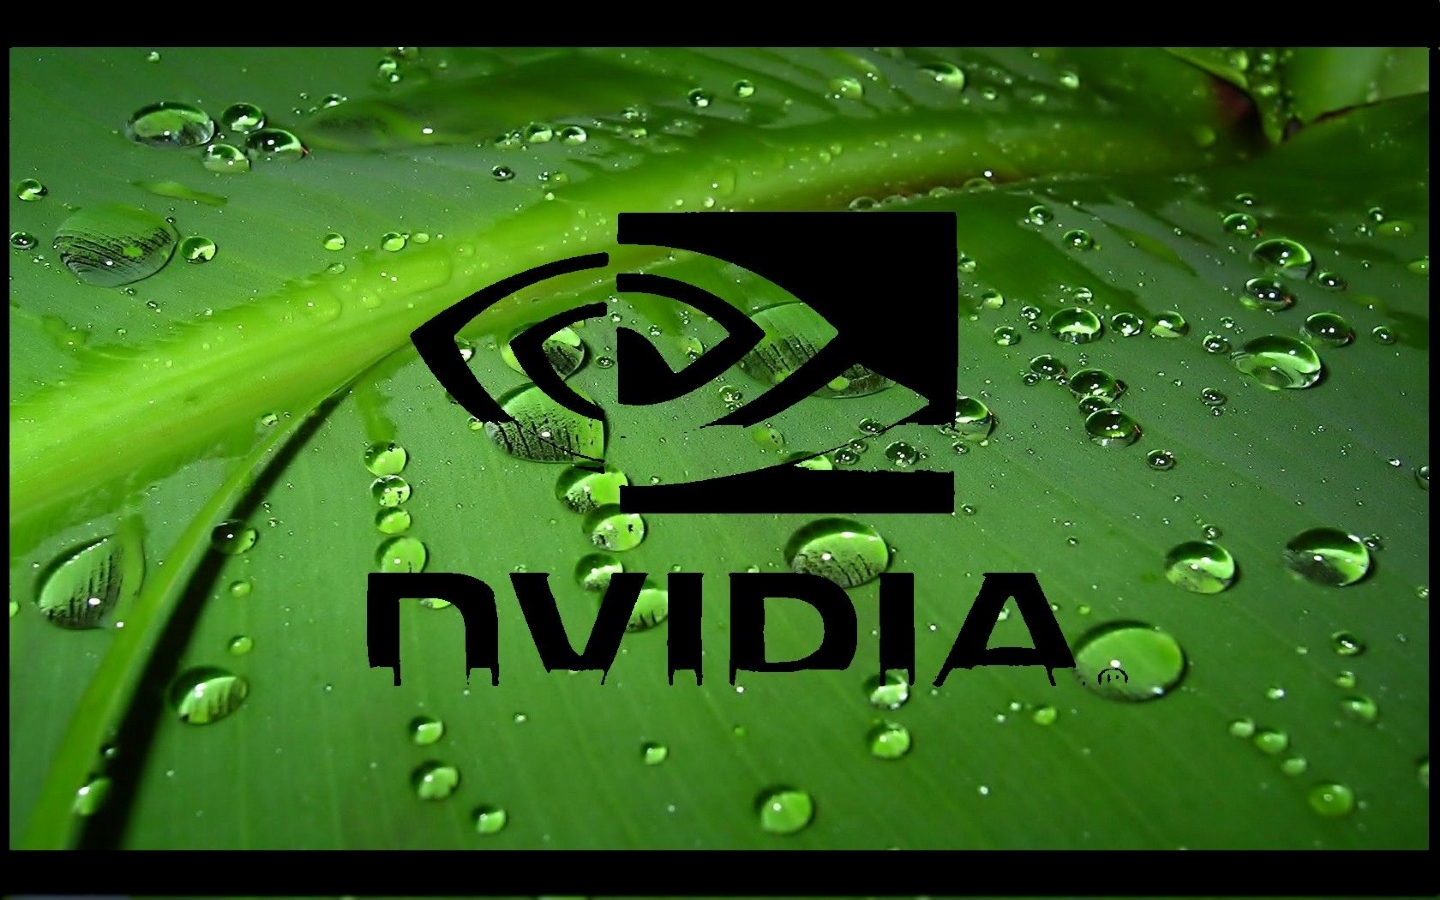 Nvidia_Logo